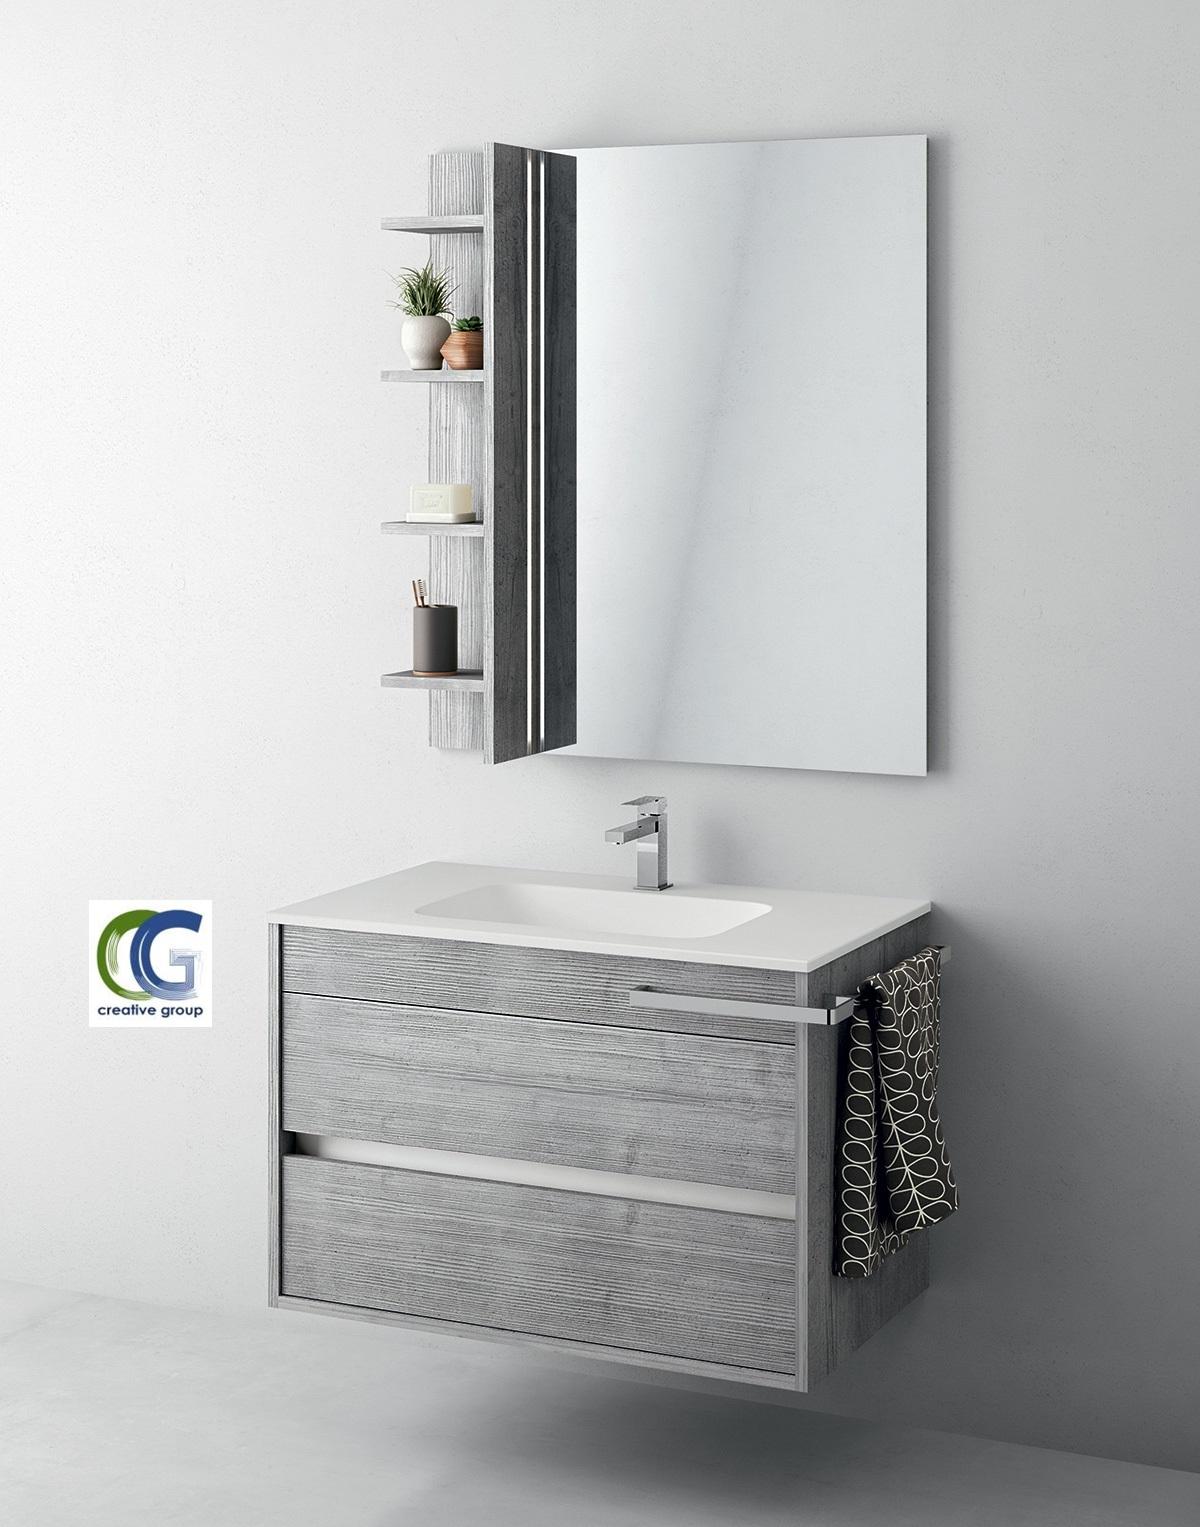 وحدة حمام كلاسيك مصر - افضل تصاميم وحدات الحمام مع شركة كرياتف  جروب 01203903309 702981702